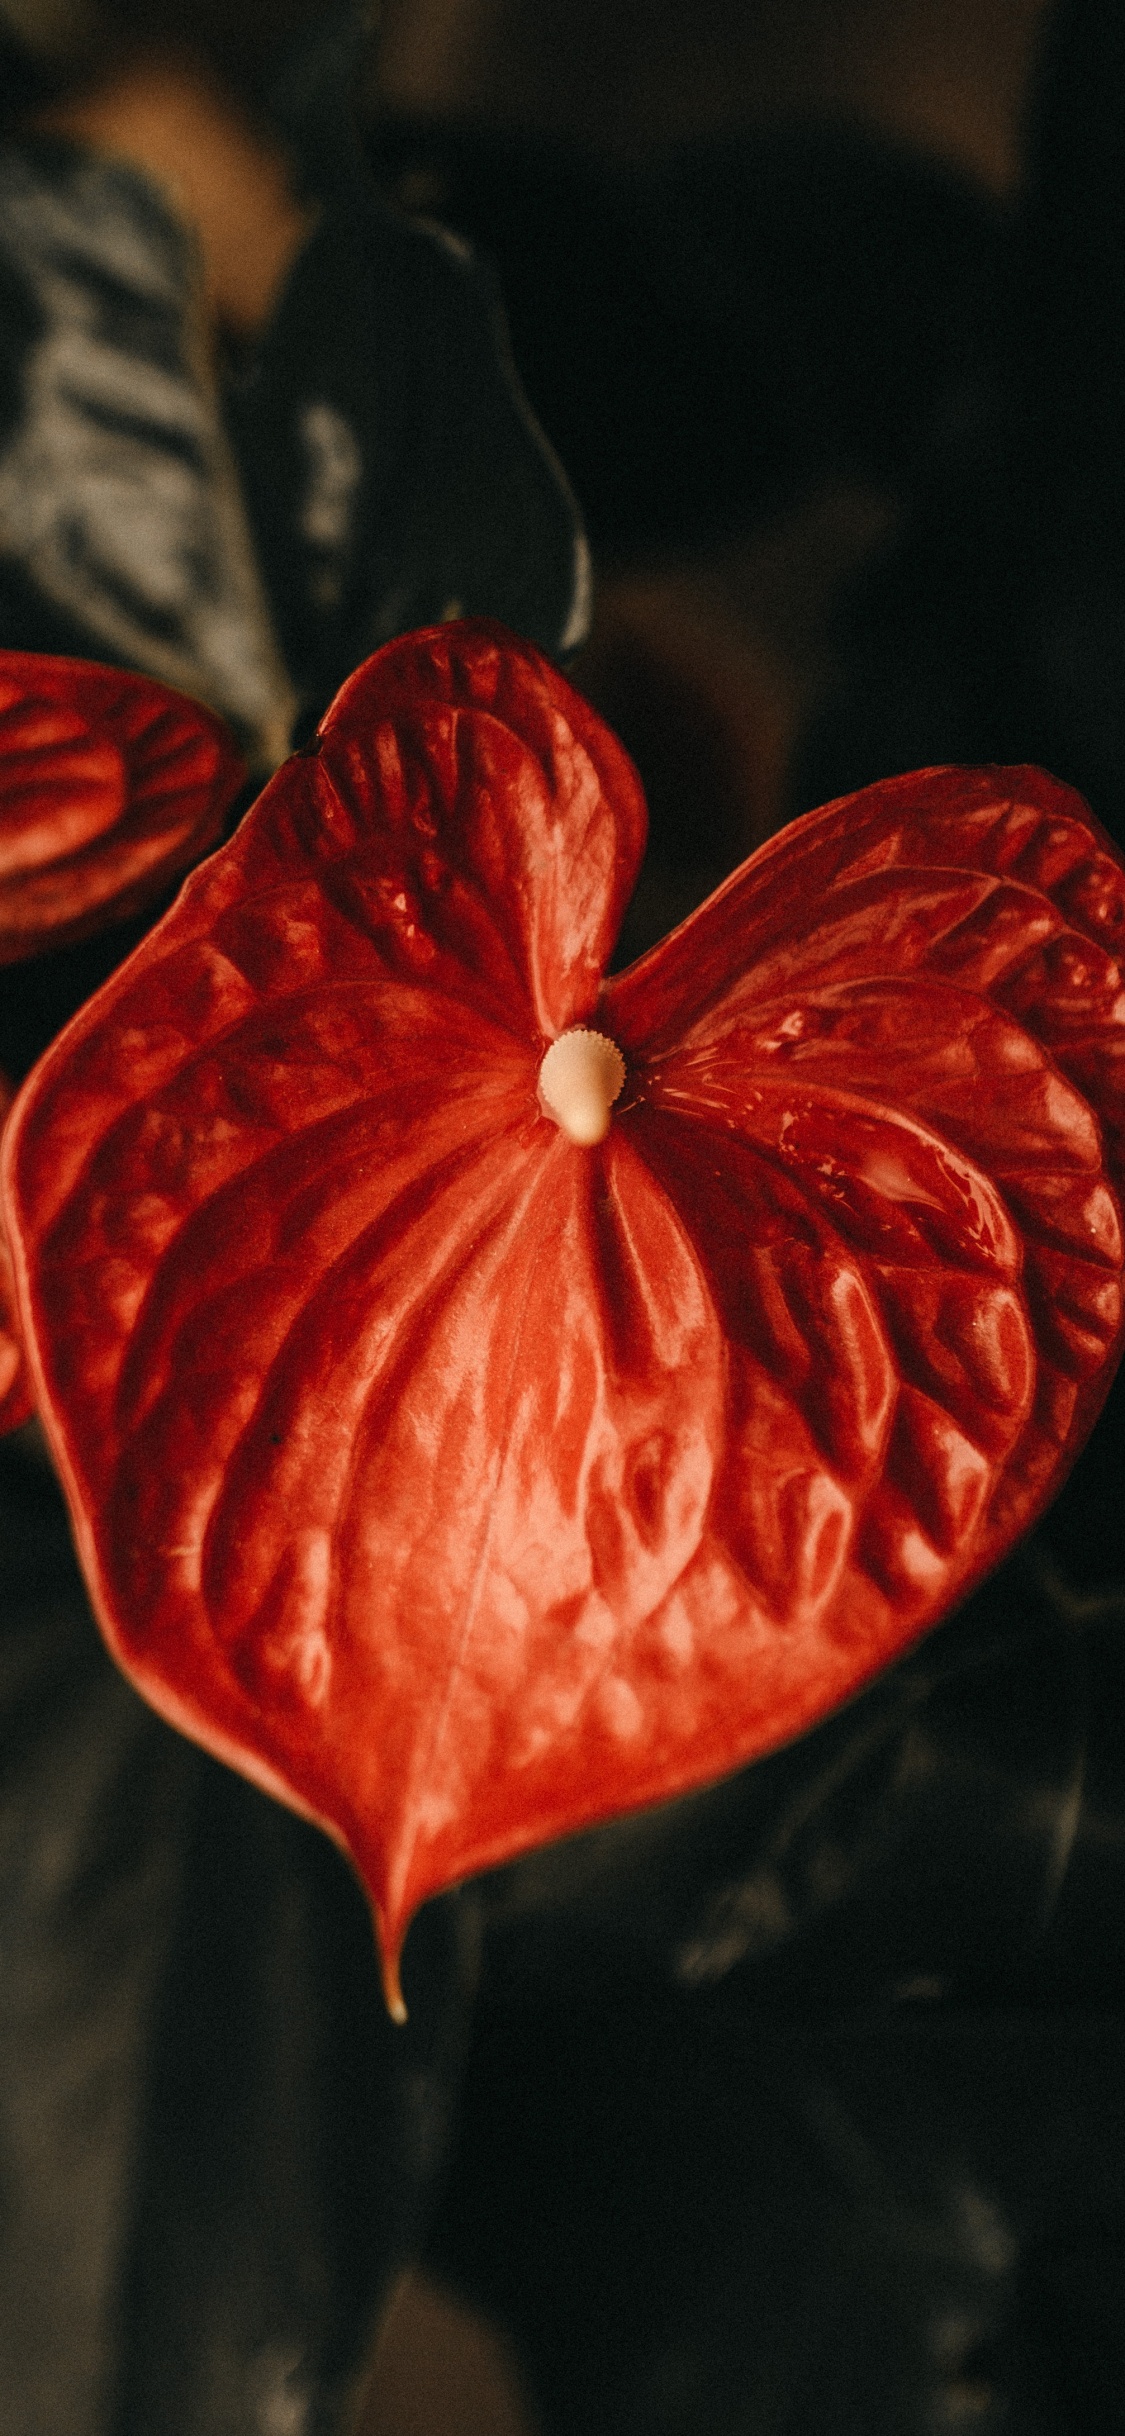 Flor Roja de 5 Pétalos en Fotografía de Cerca. Wallpaper in 1125x2436 Resolution